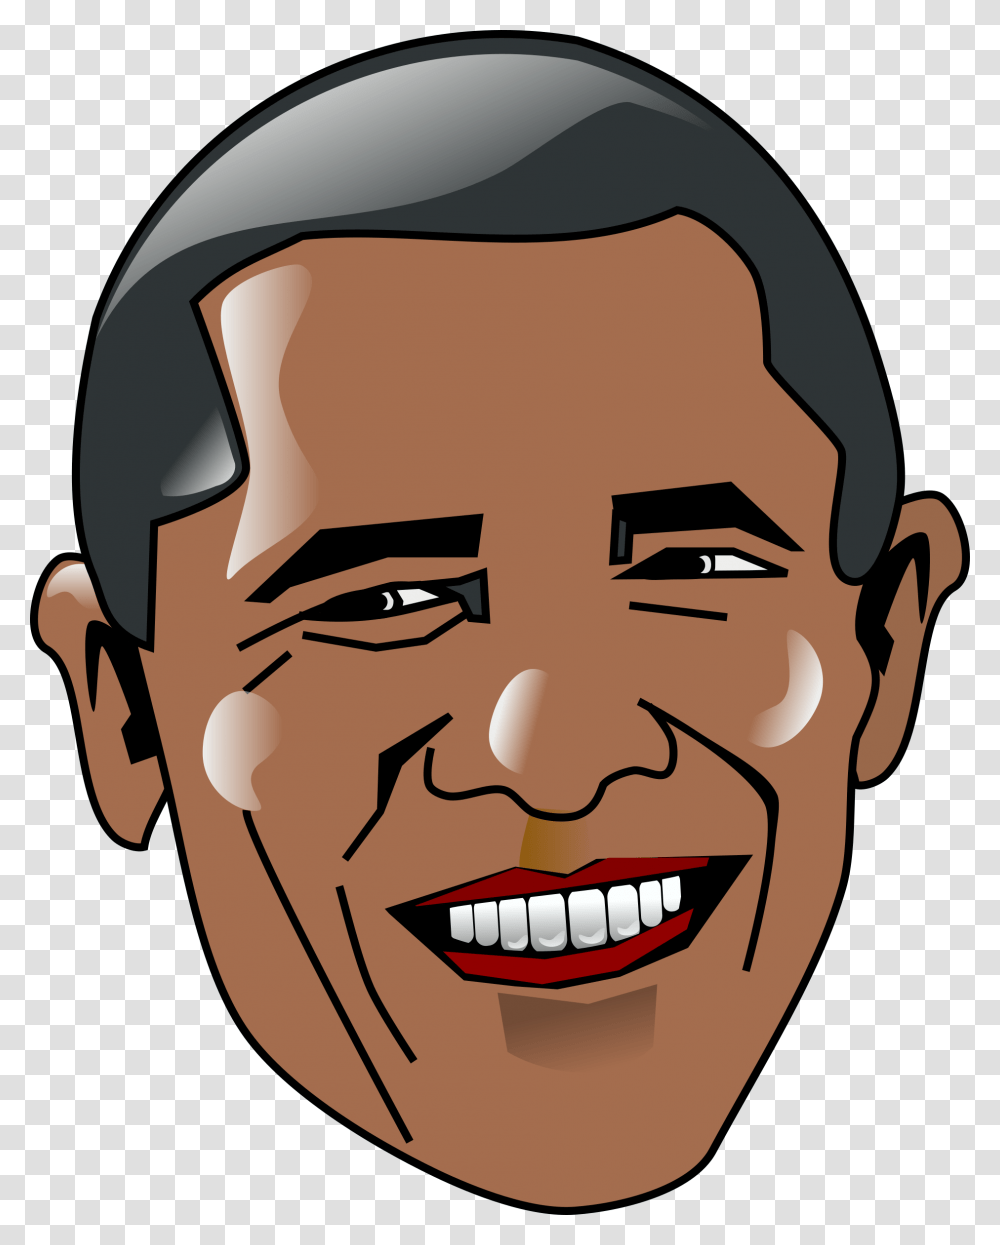 Barack Obama Barack Obama In Obama Barack, Head, Face, Smile, Teeth Transparent Png